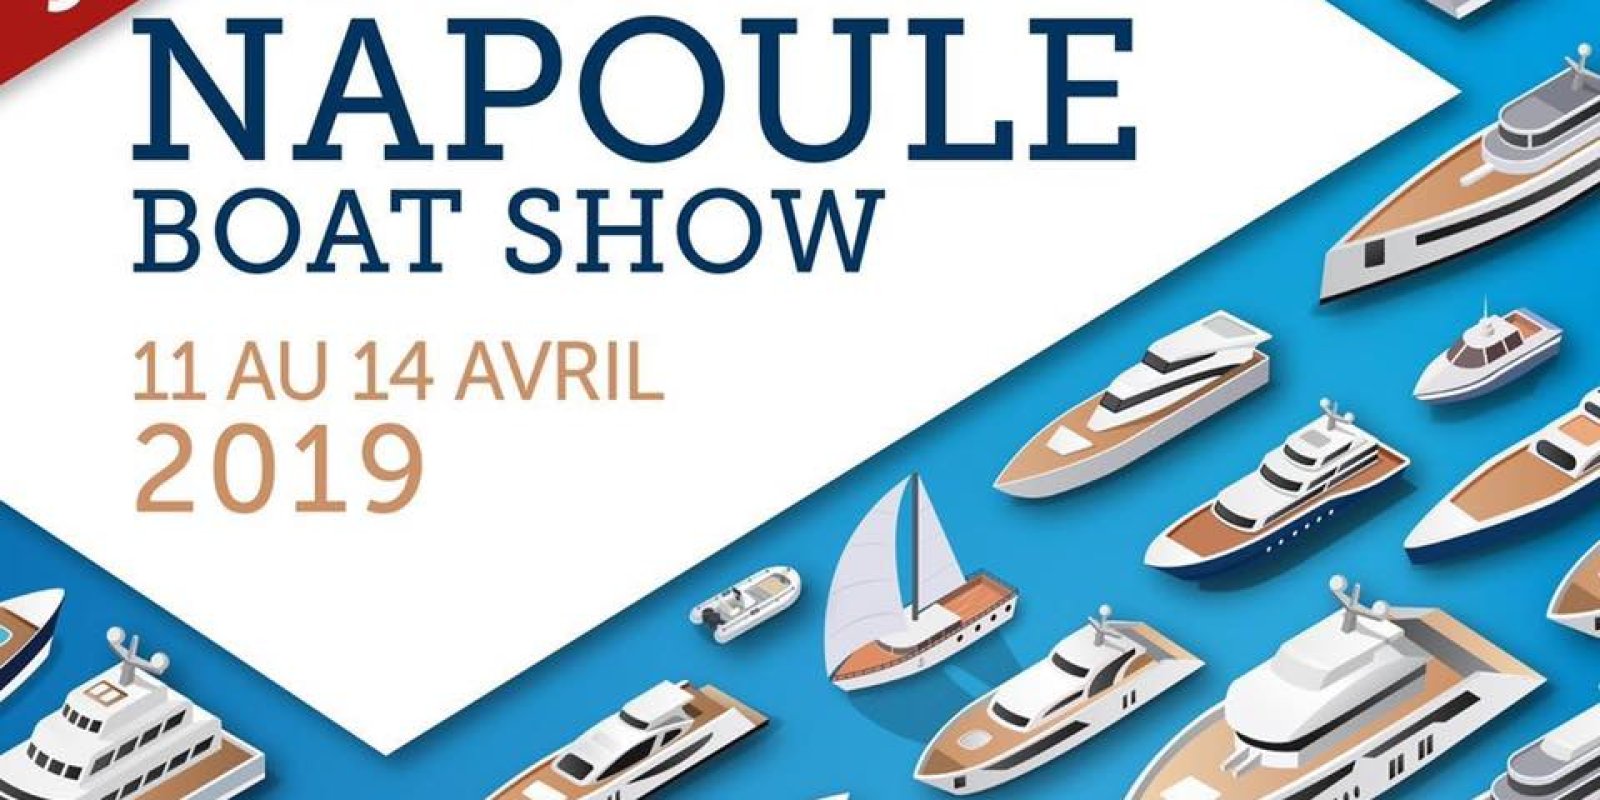 La Napoule Boat Show 11 - 14 April 